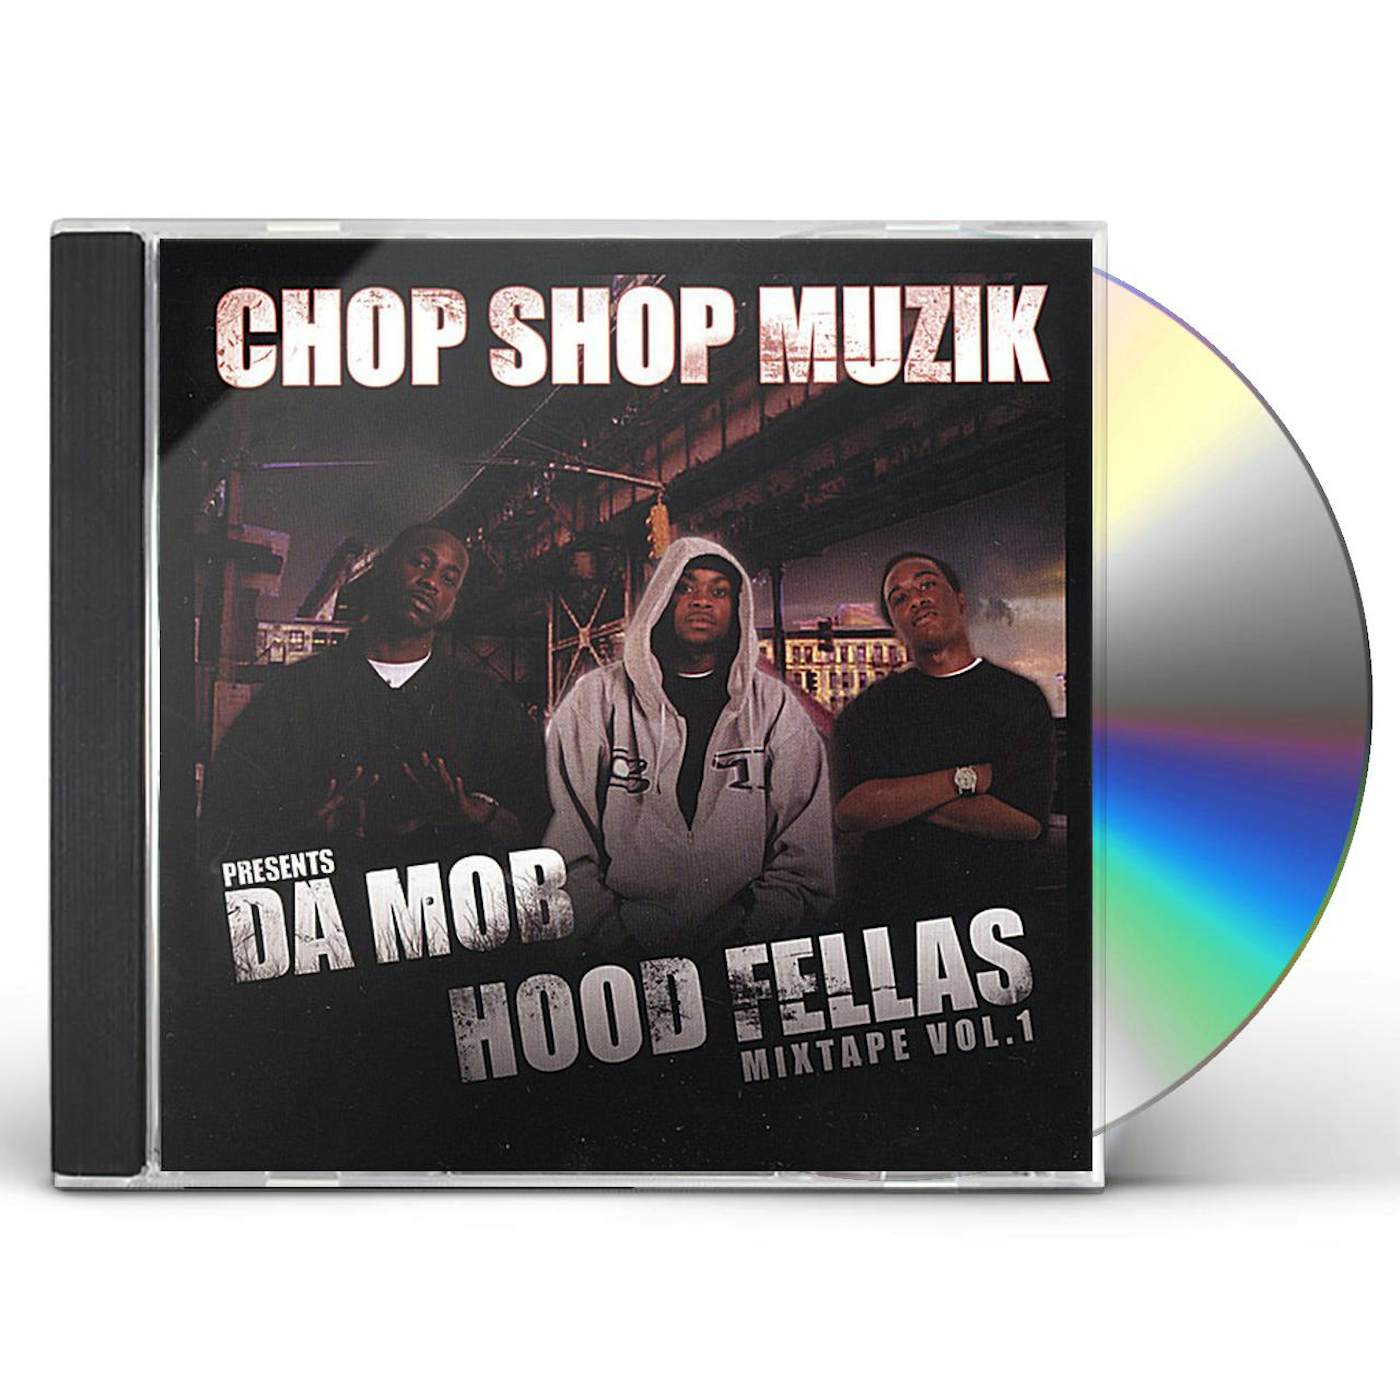 Da Mob HOODFELLAS MIXTAPE 1 CD